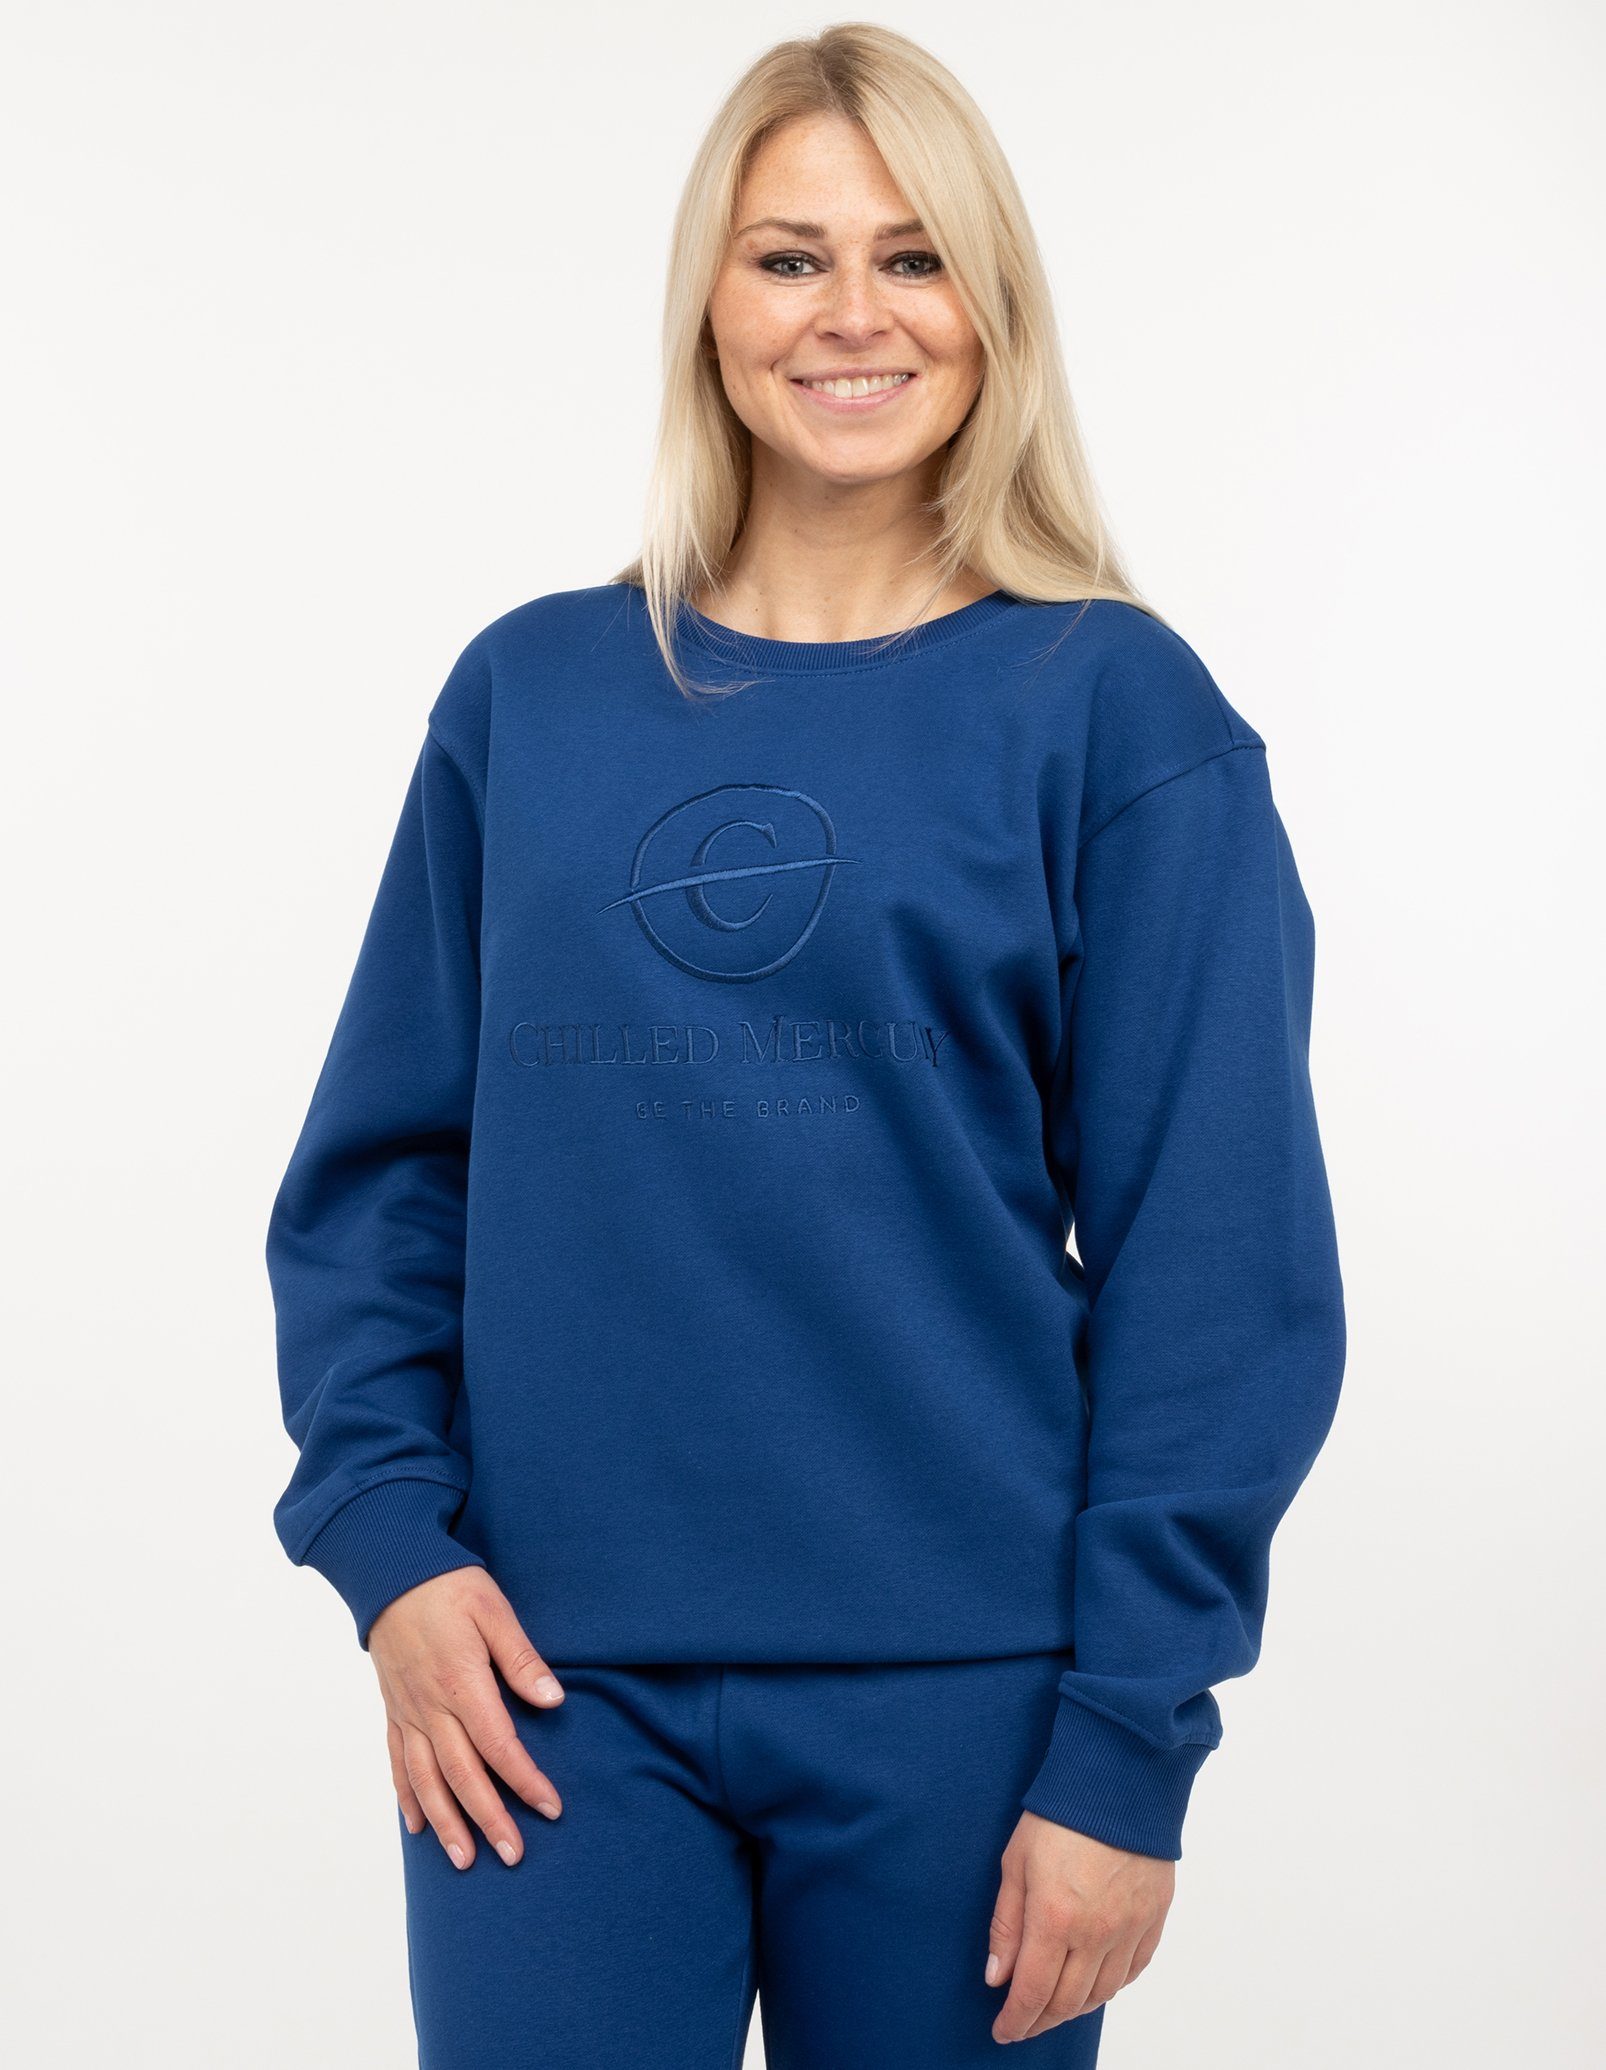 Chilled Mercury Damen / Pullover Sweatshirt Blau